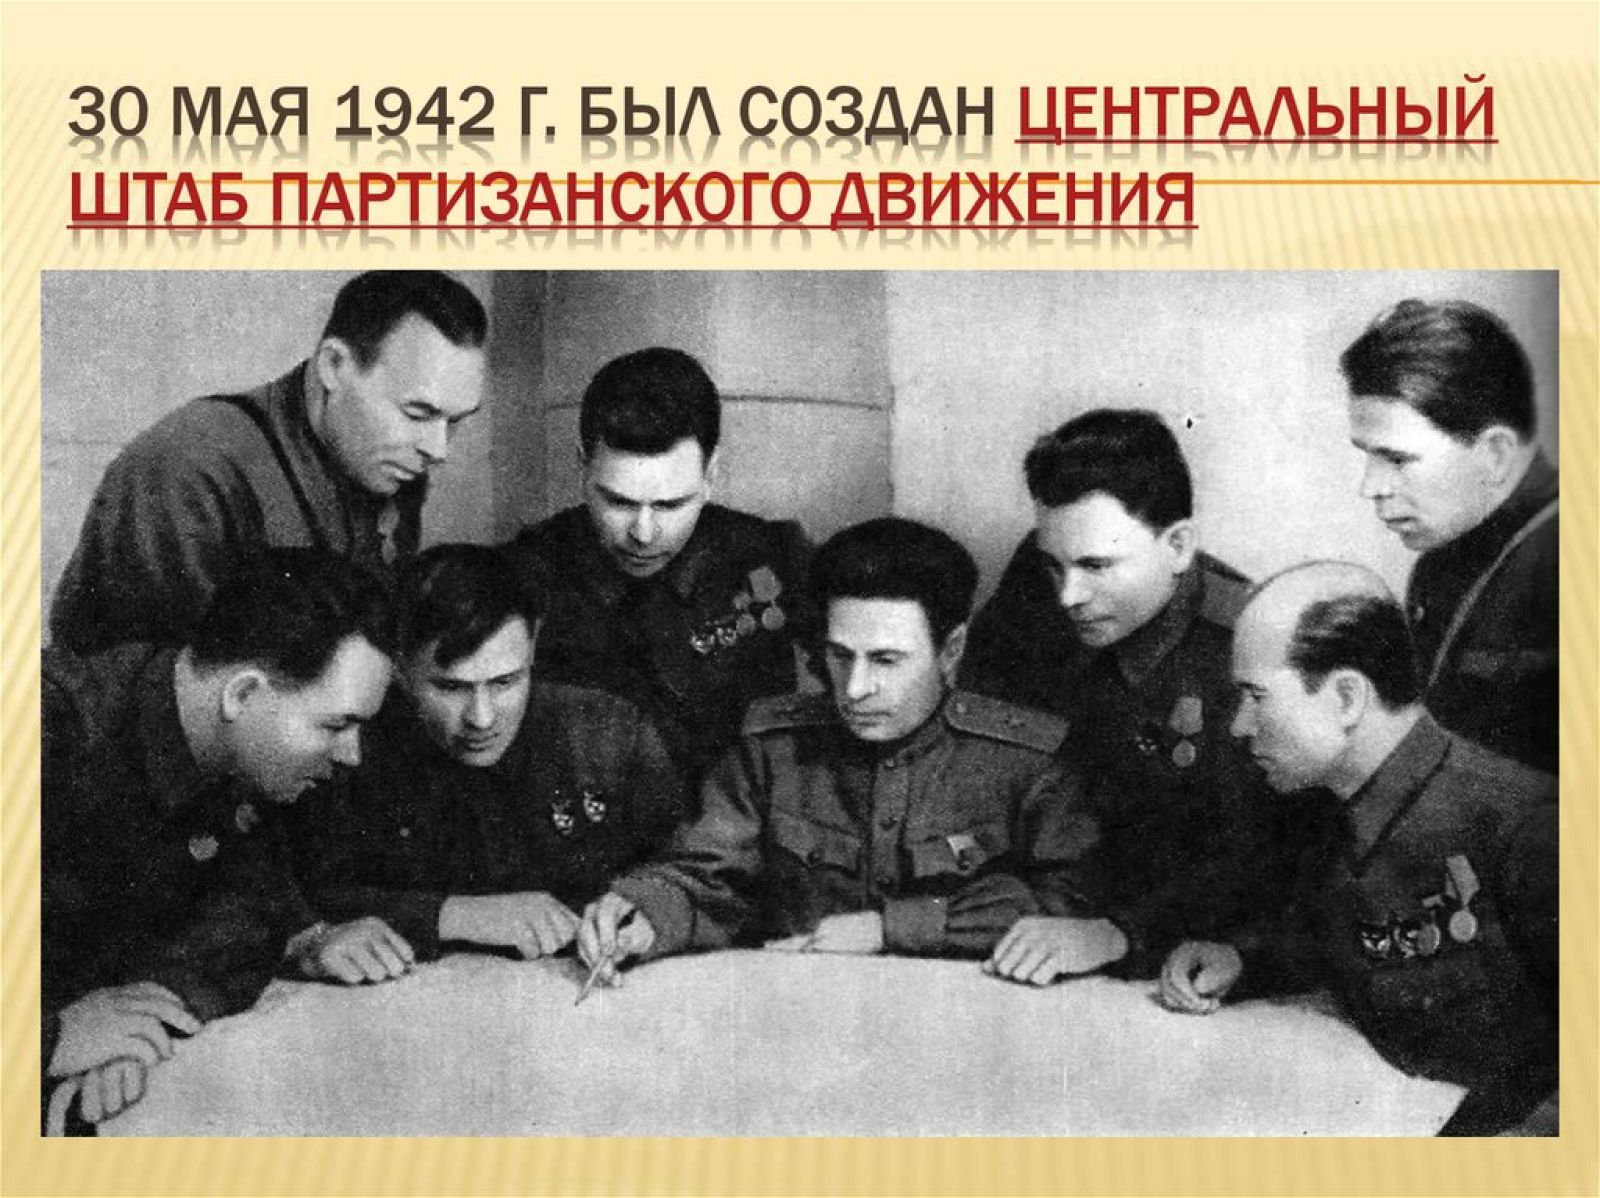 1 мая 1942 г. 30 Мая 1942 года создан Центральный штаб партизанского движения. 30 Мая центрального штаба партизанского движения. Центральный штаб Партизан 1942 год. Партизанский штаб 1942 возглавил.